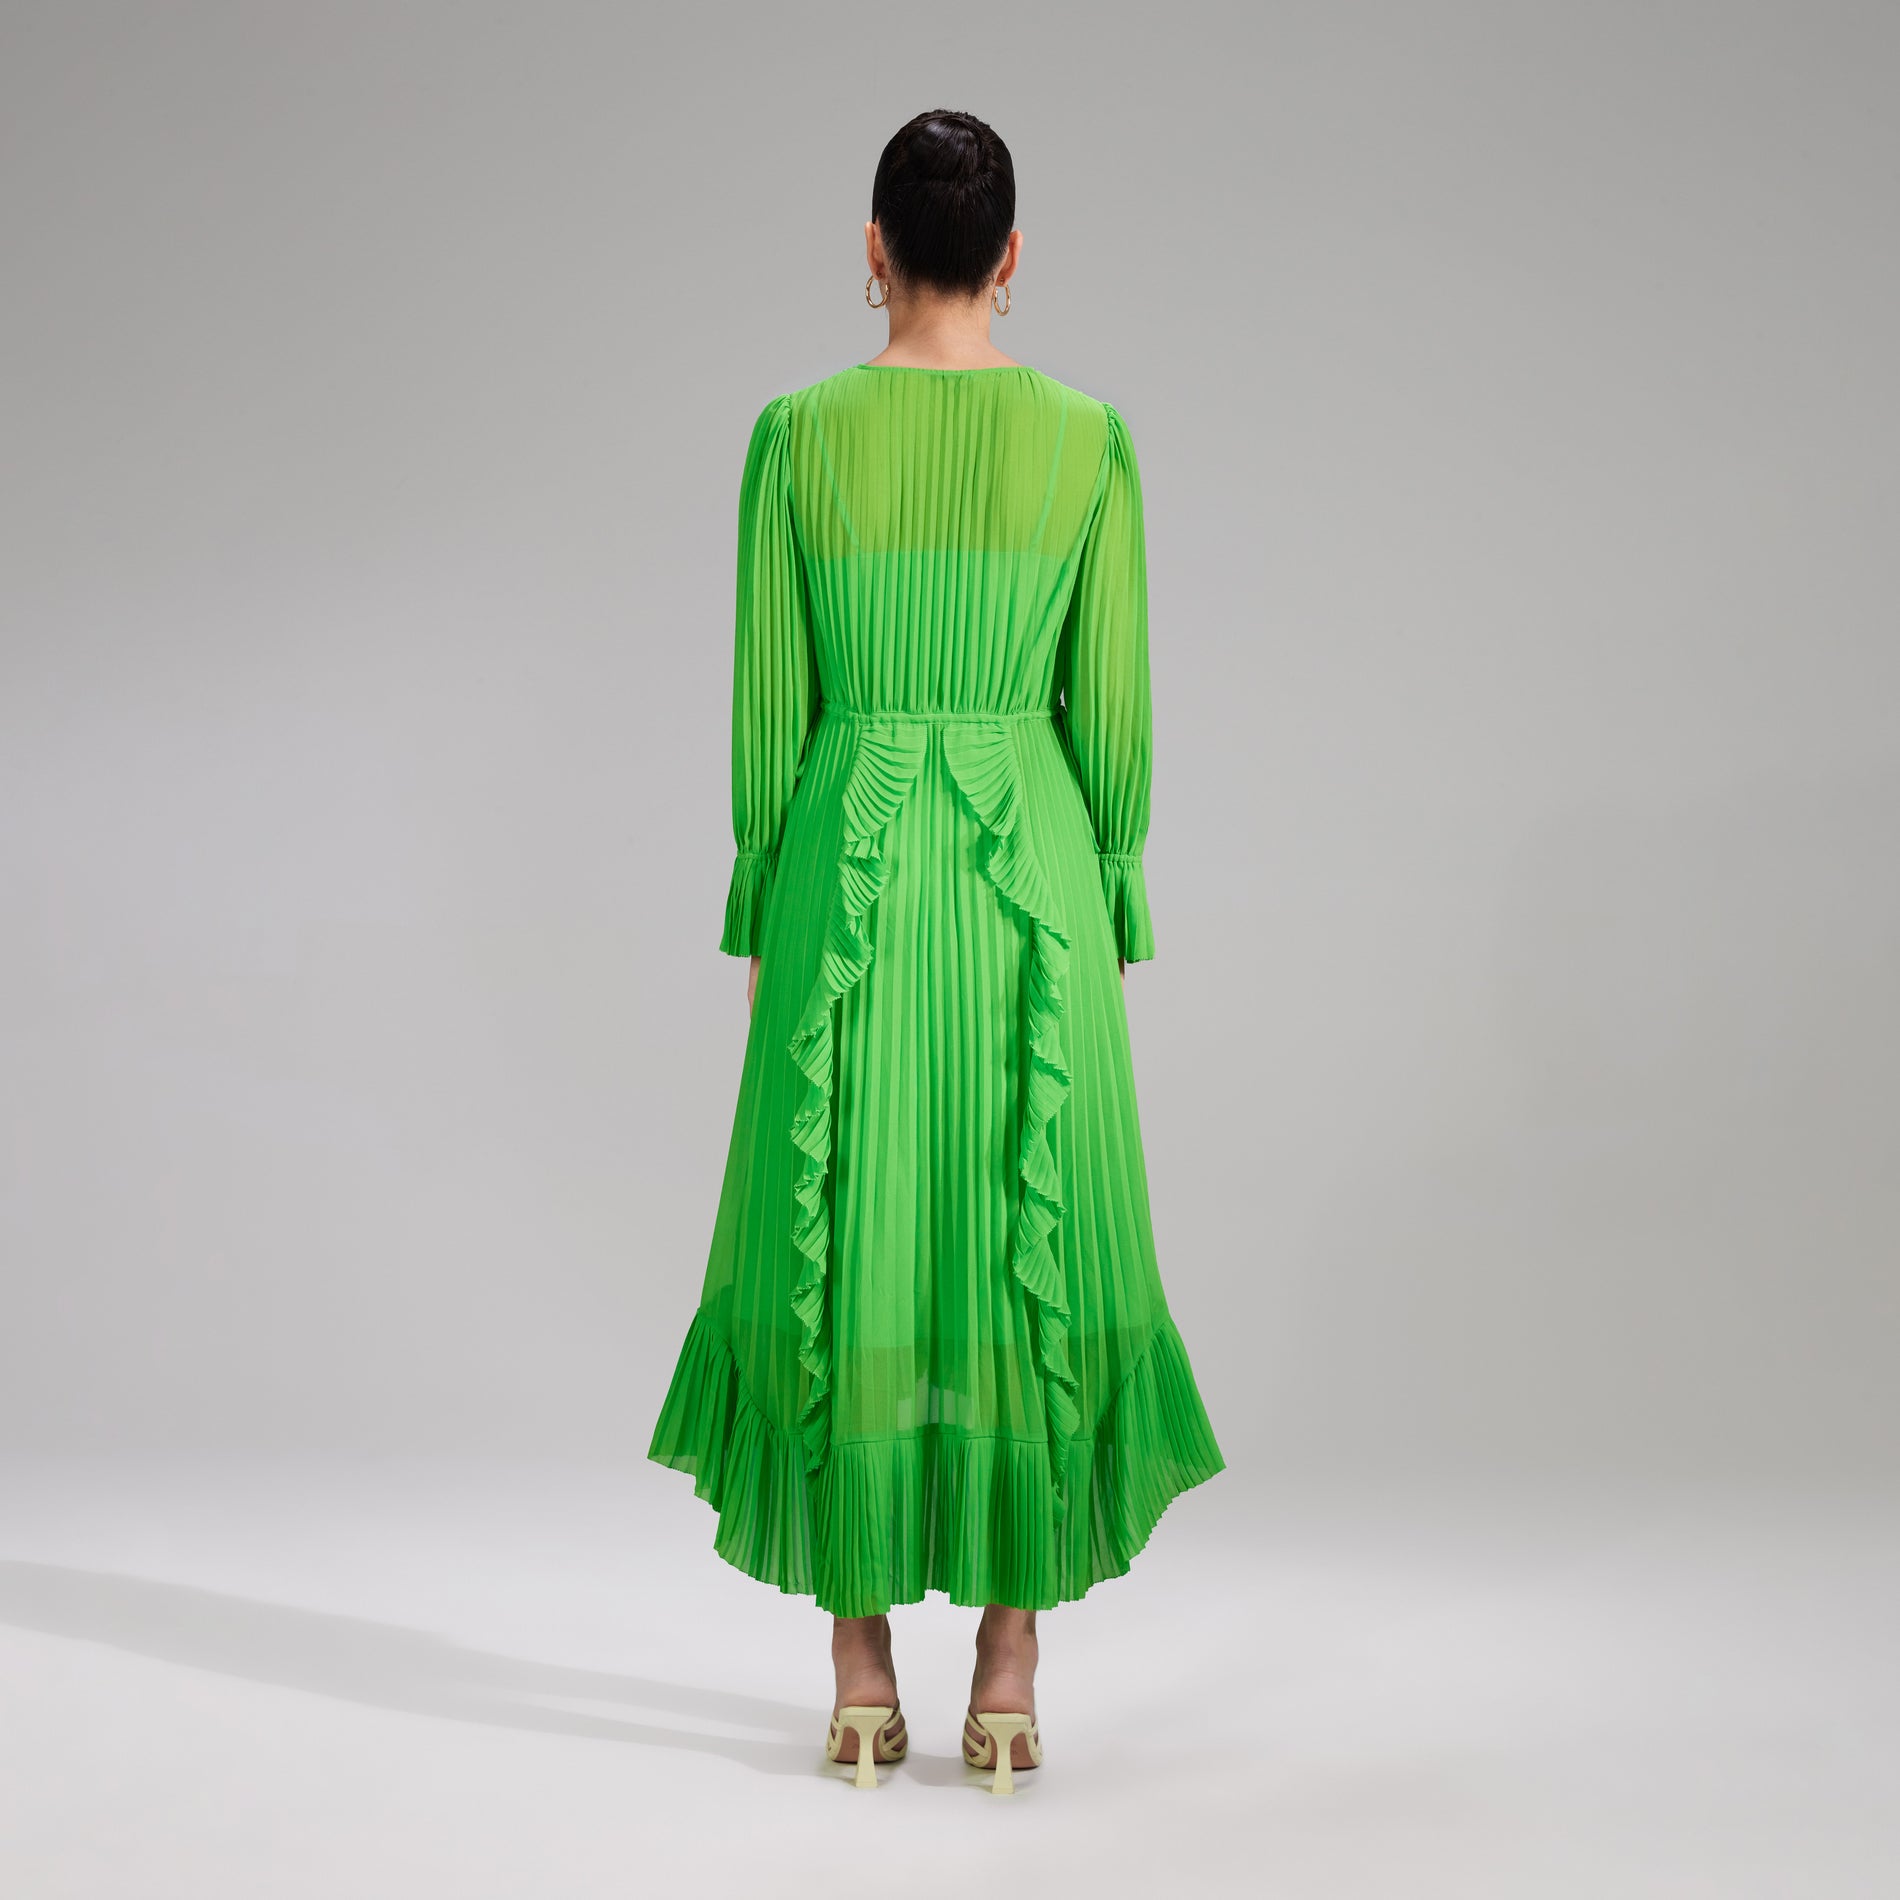 A woman wearing the Green Chiffon Ruffle Midi Dress